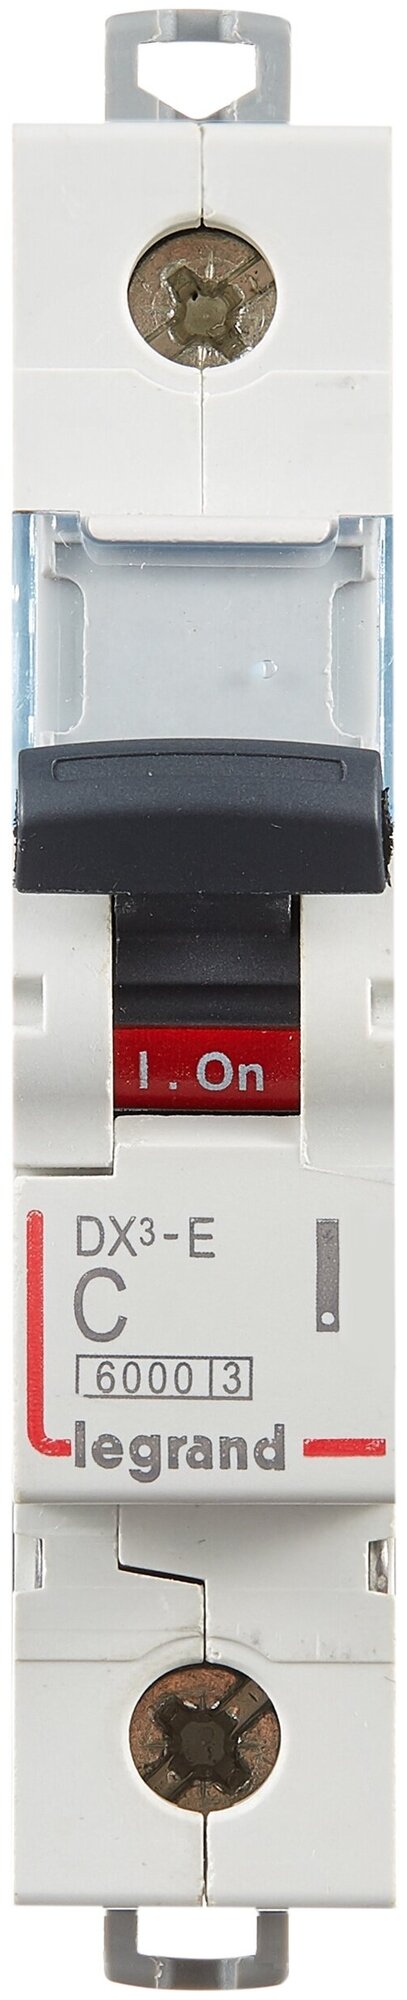 DX3-E 407259 Автоматический выключатель однополюсный 4А (6 кА, C) Legrand - фото №2